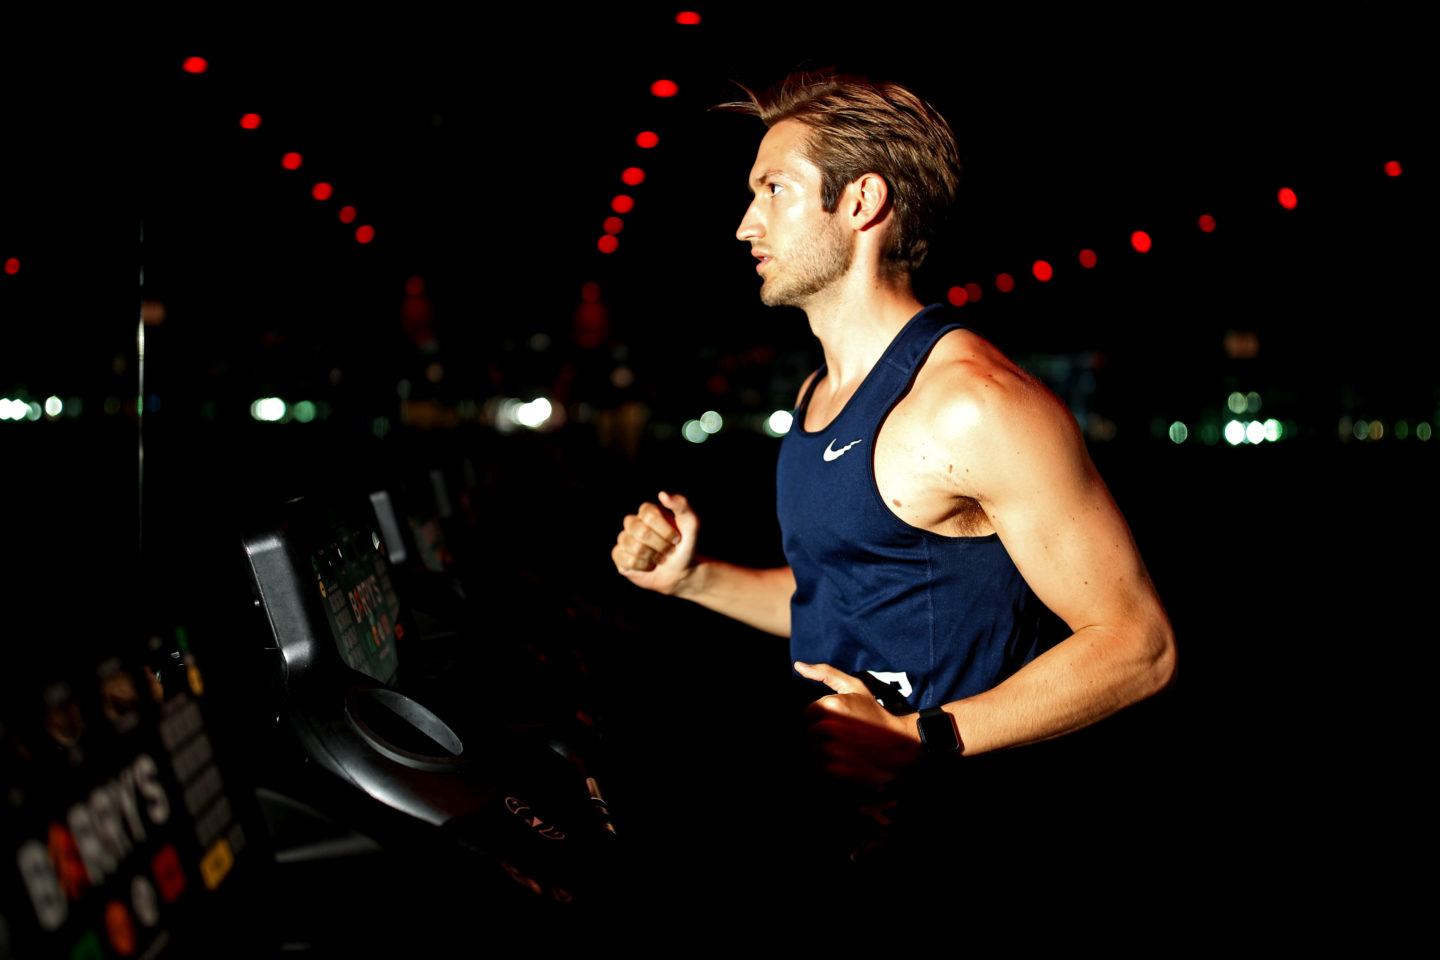 Man in a navy tank top running on a treadmill